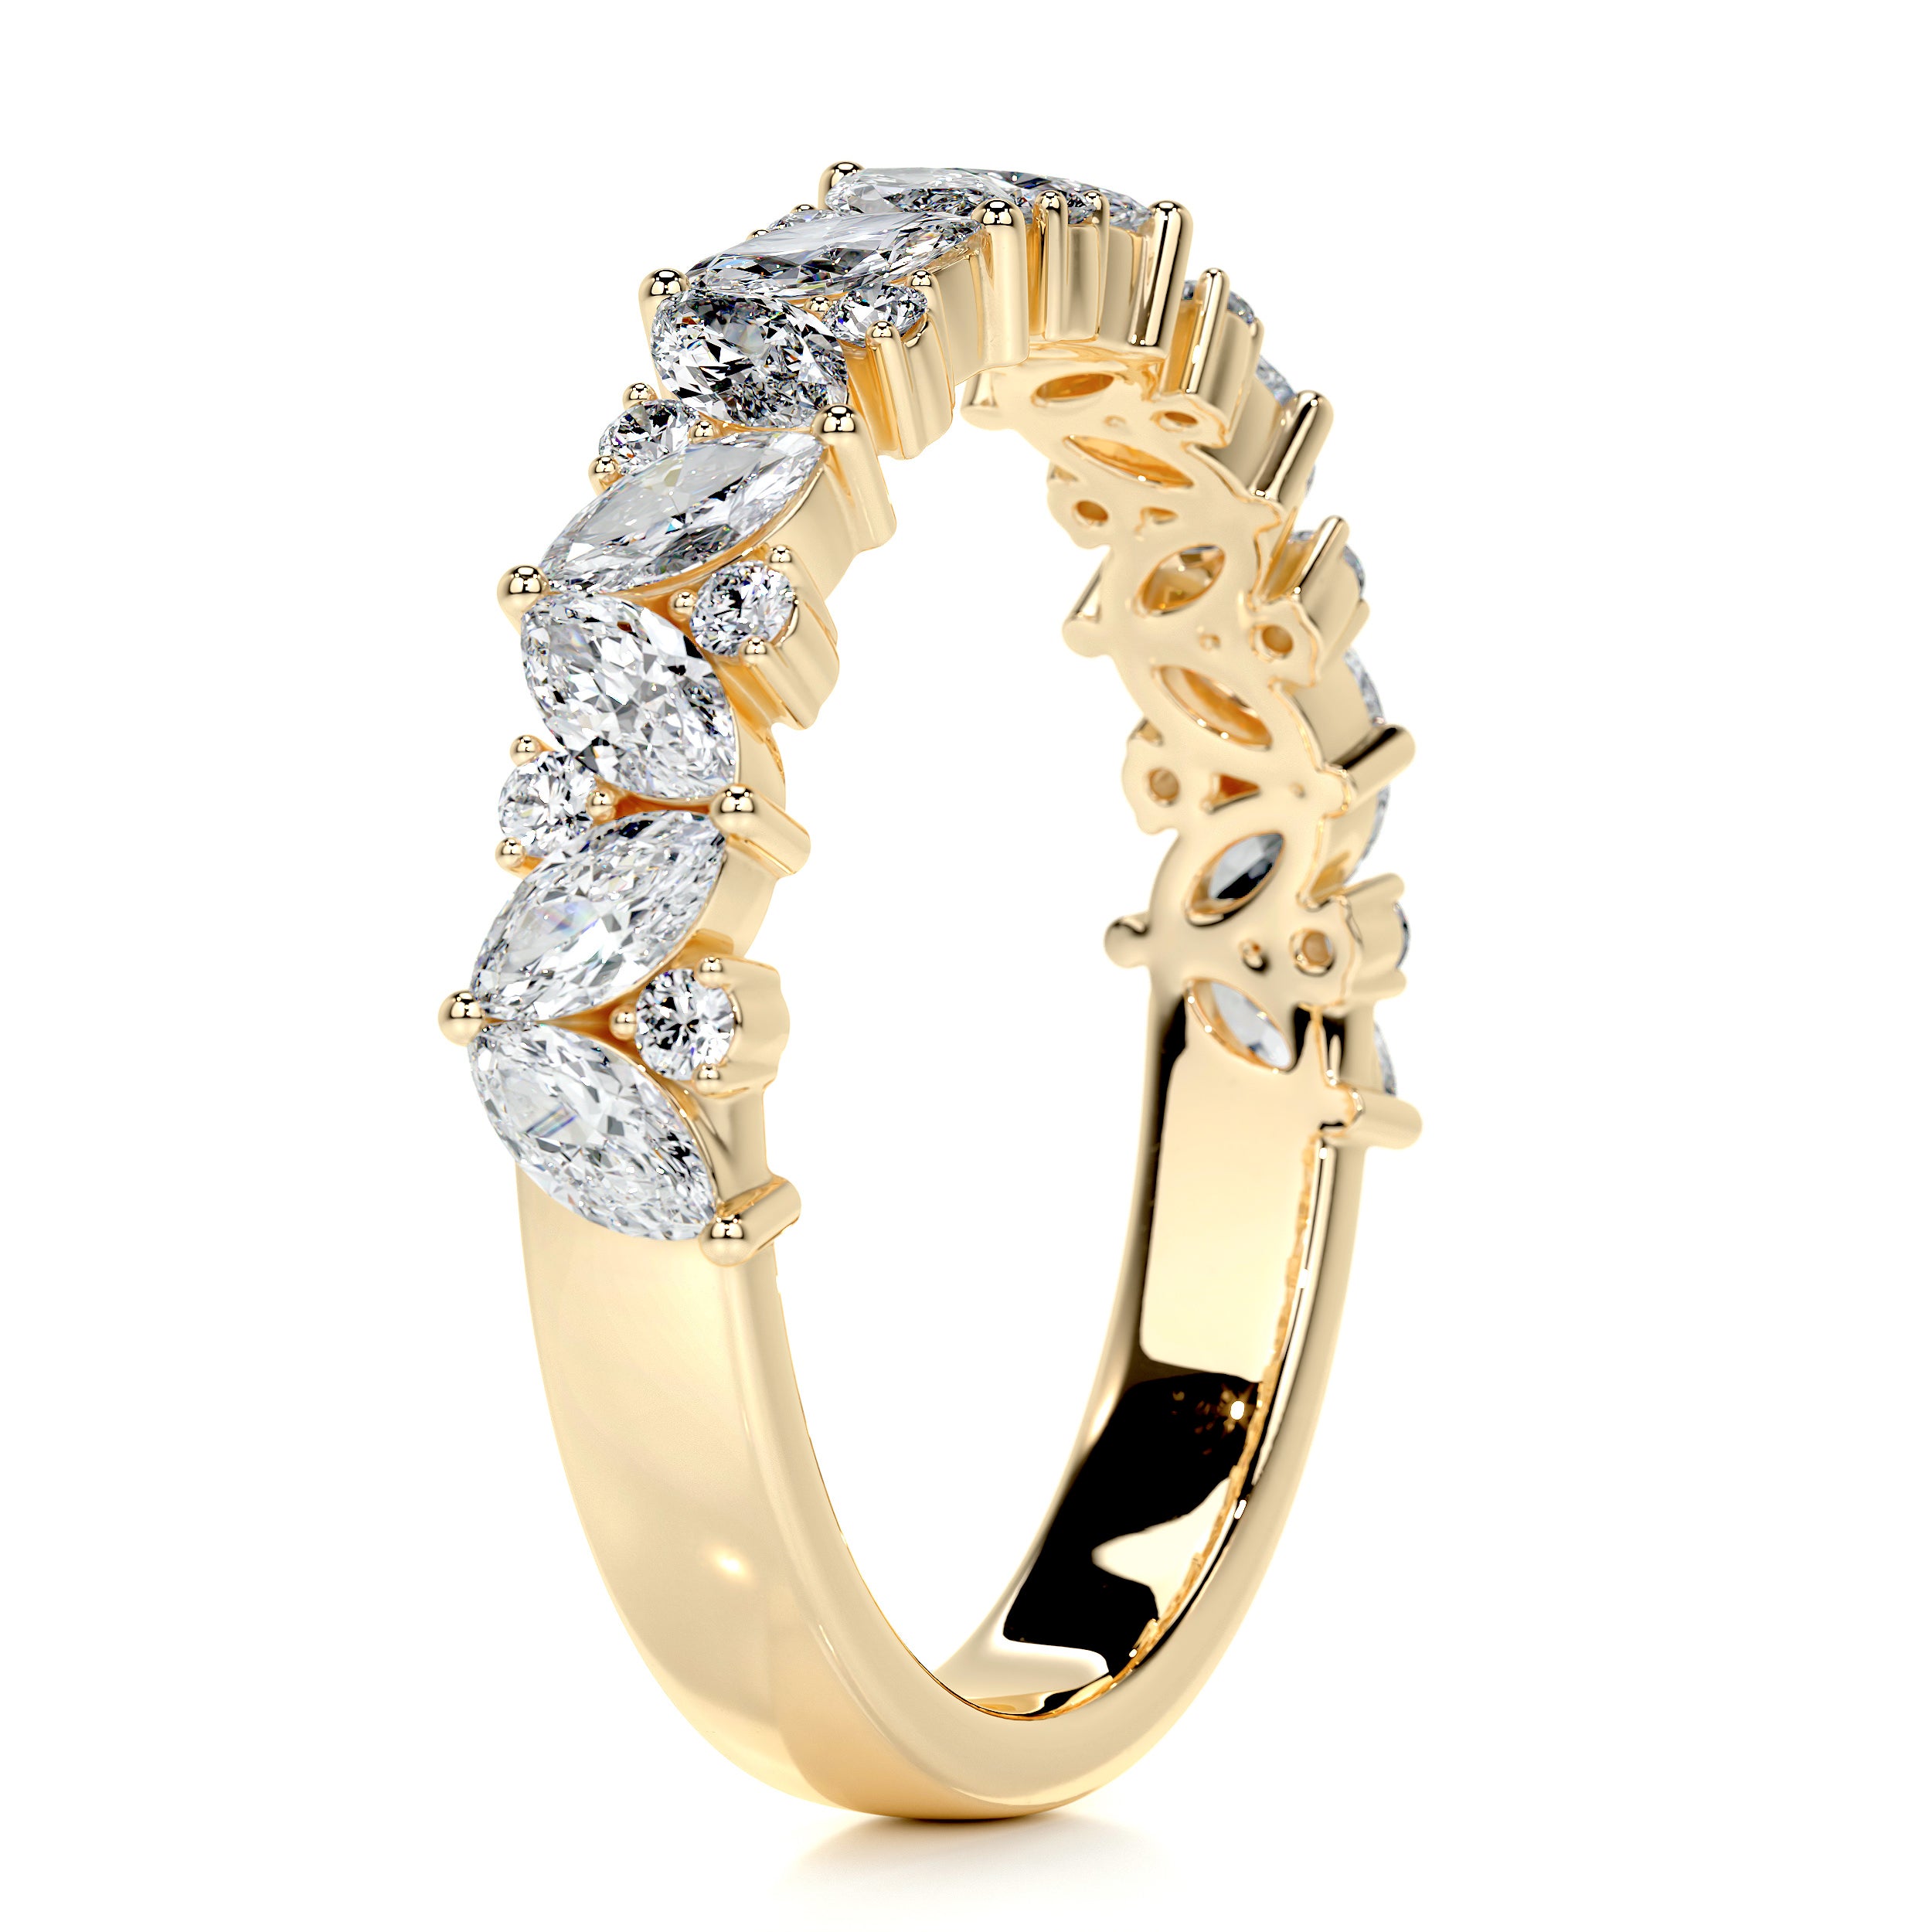 Regina Diamond Wedding Ring   (0.85 Carat) -18K Yellow Gold